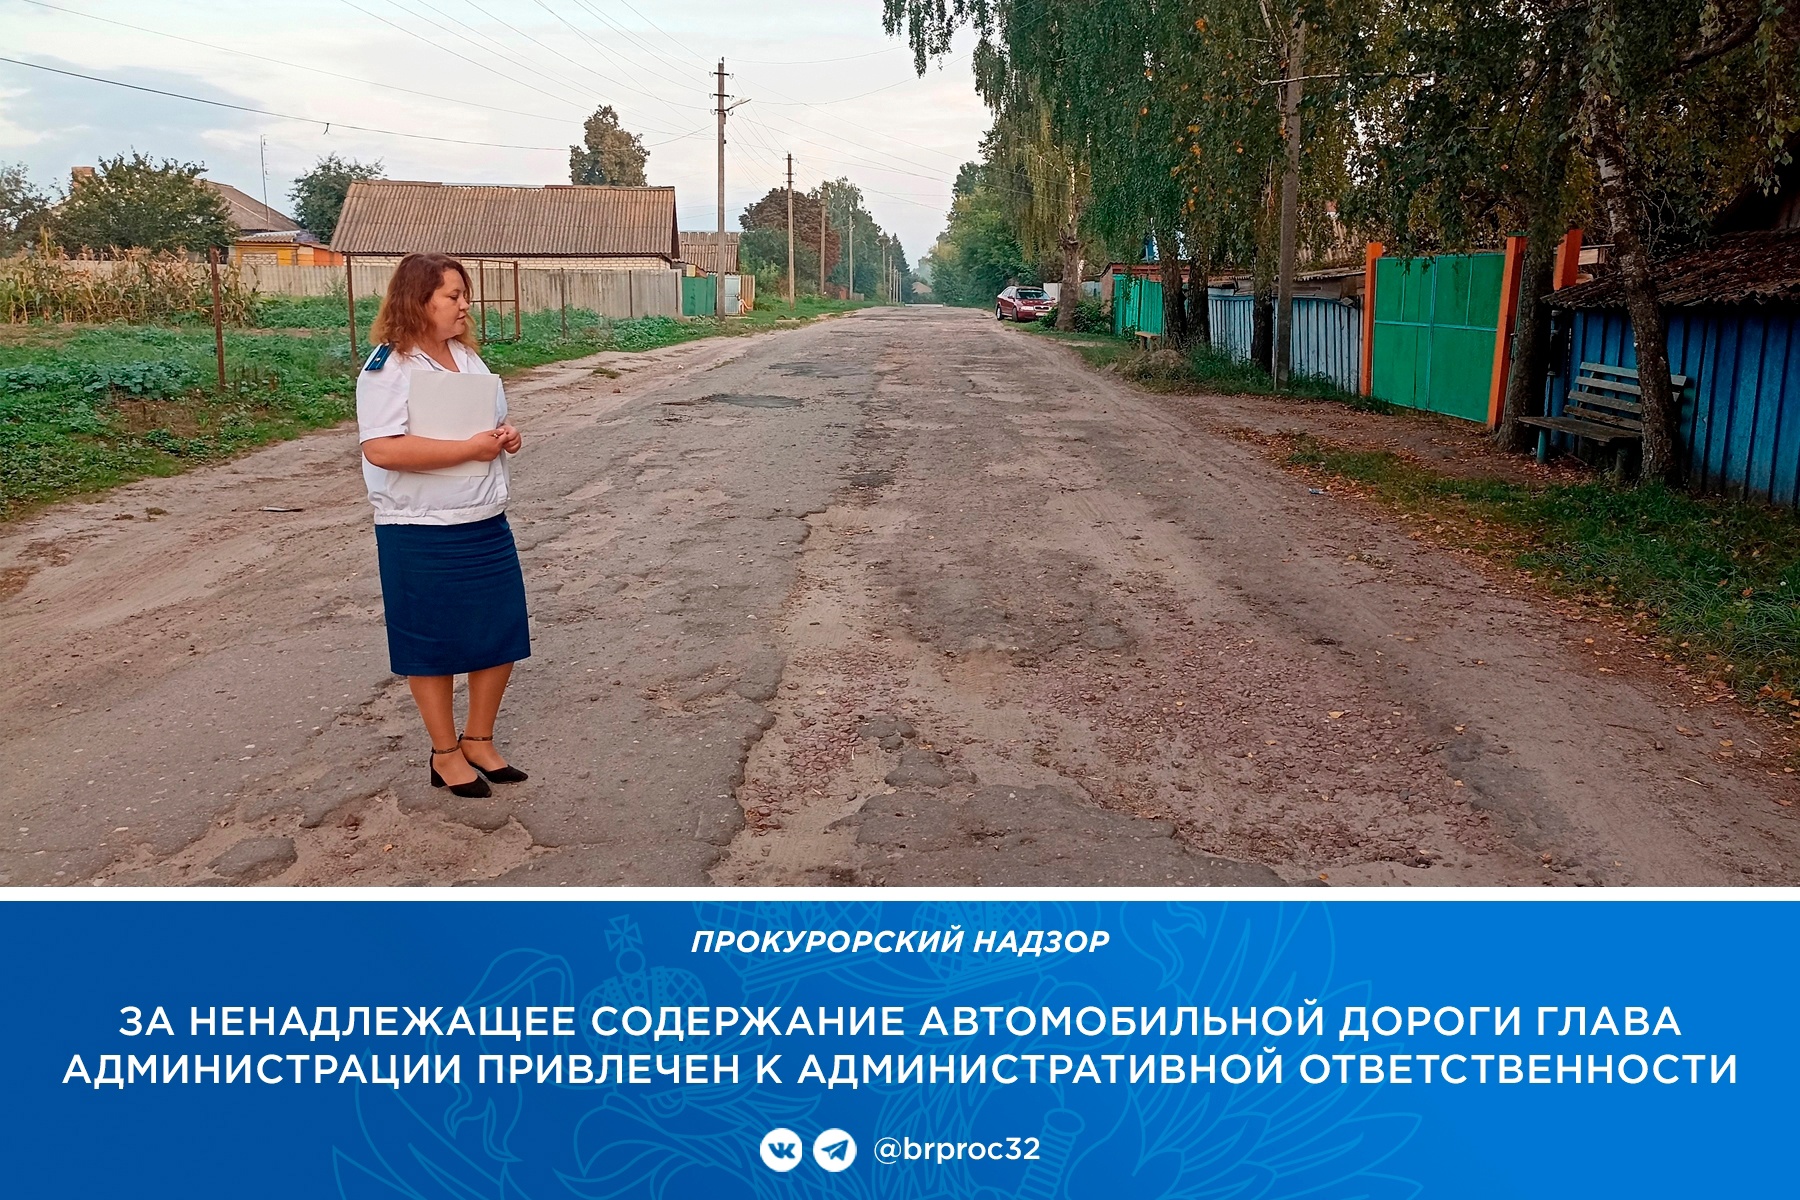 Главу брянского села оштрафовали на 20 тысяч рублей после жалобы жителей на убитую дорогу